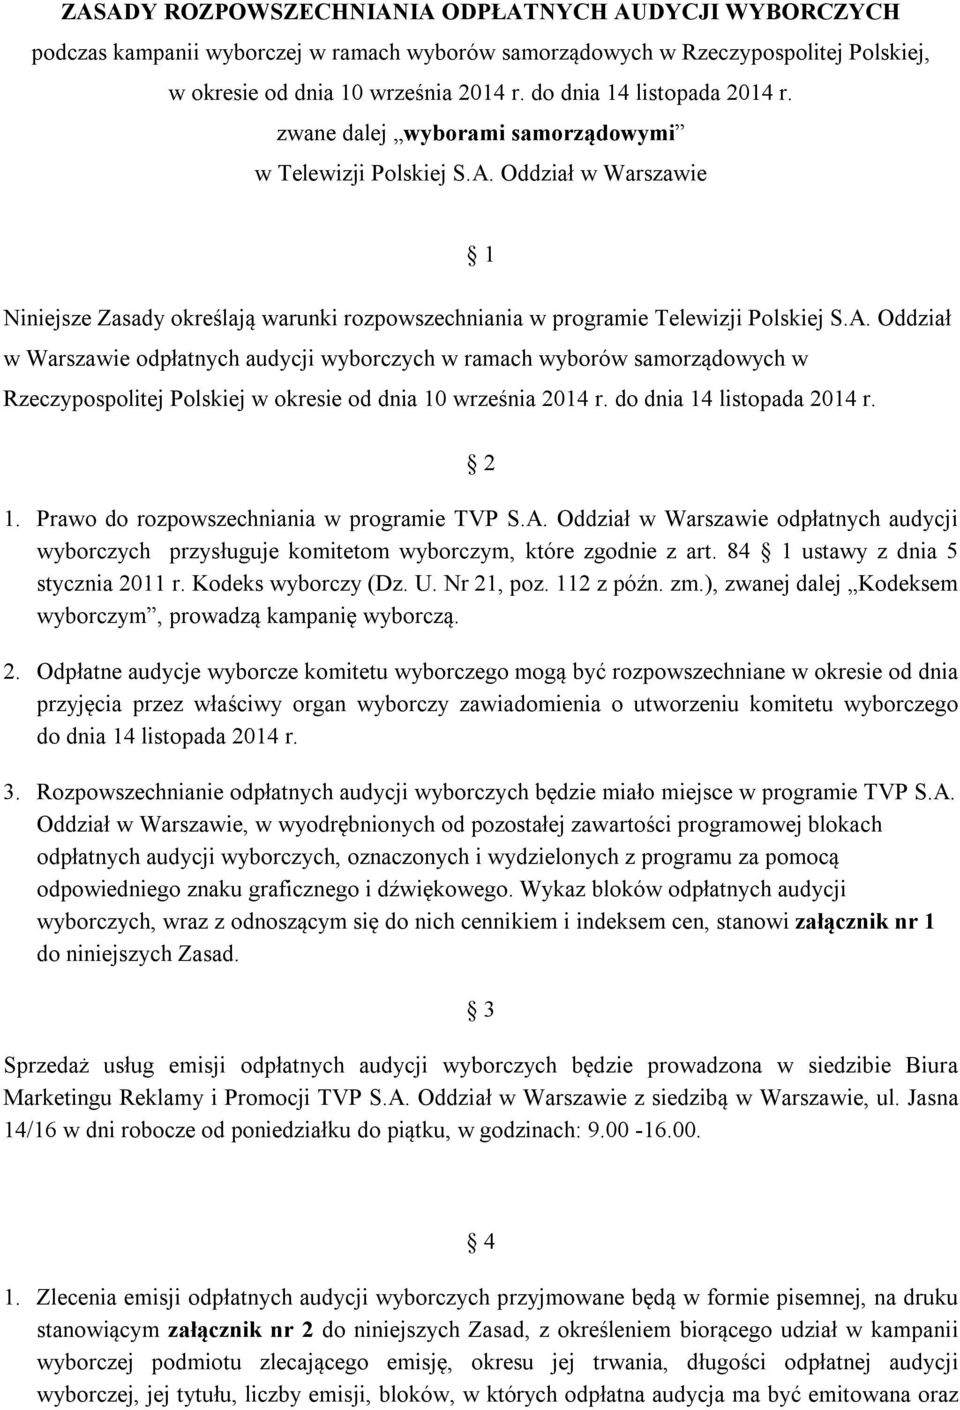 Prawo do rozpowszechniania w programie TVP S.A. Oddział w Warszawie odpłatnych audycji wyborczych przysługuje komitetom wyborczym, które zgodnie z art. 84 1 ustawy z dnia 5 stycznia 2011 r.